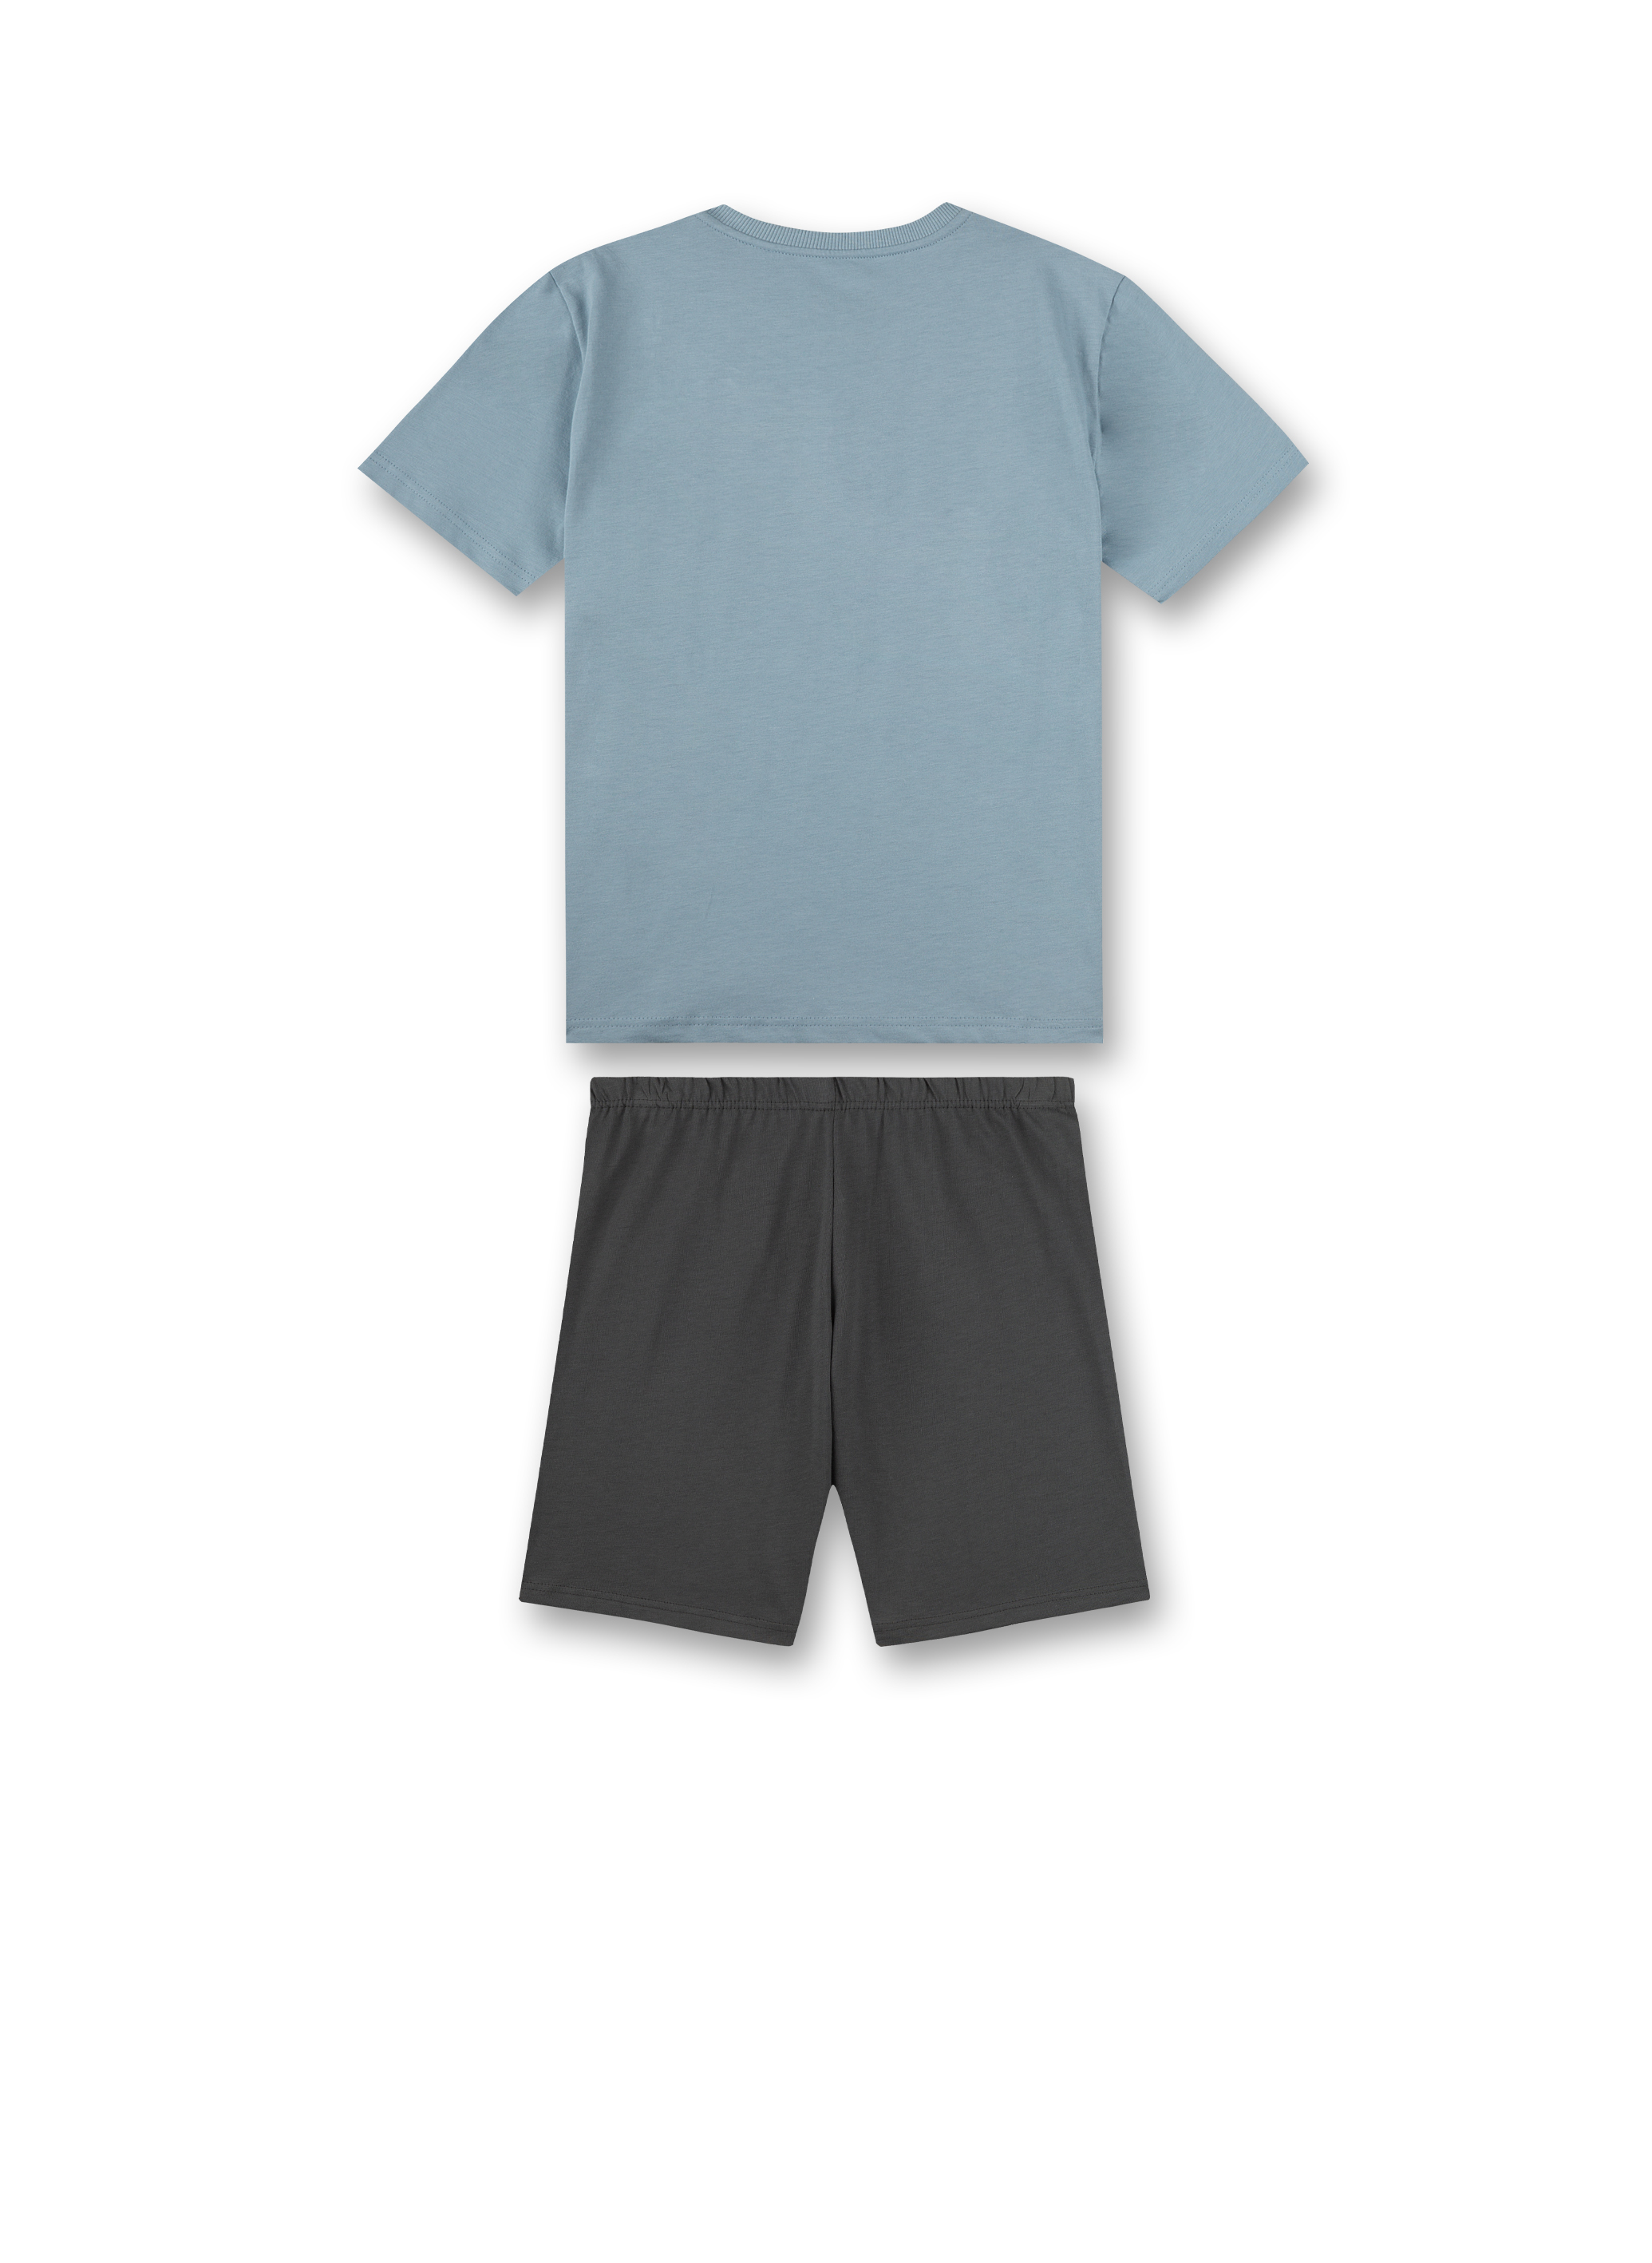 Jungen-Schlafanzug kurz Blau